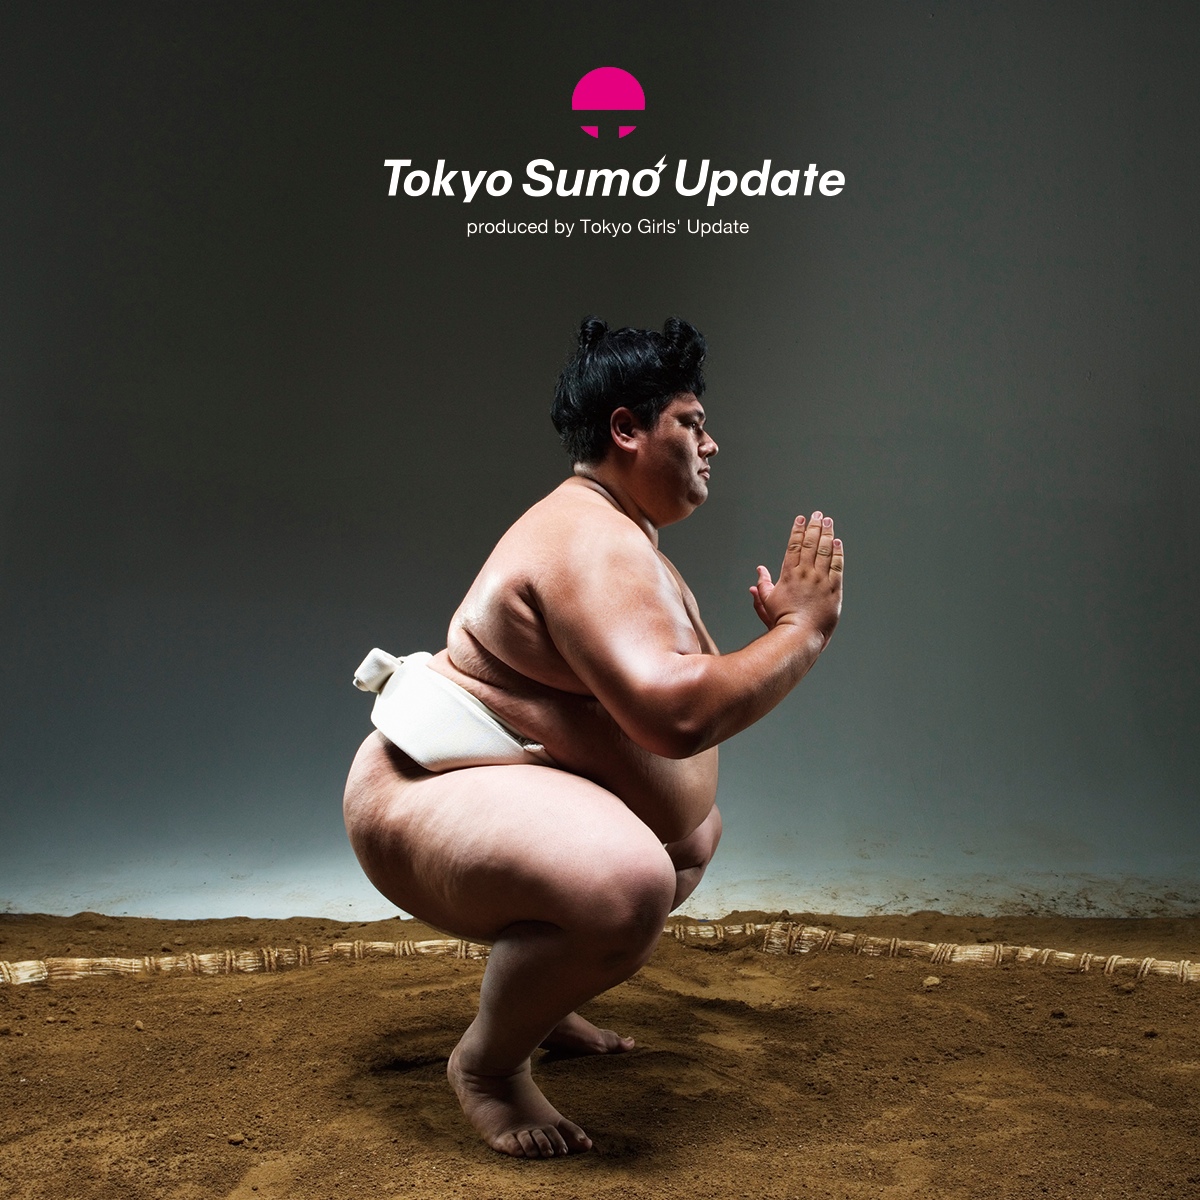 IMPORTANT NOTICE : We Launch New Website, “Tokyo Sumo Update”